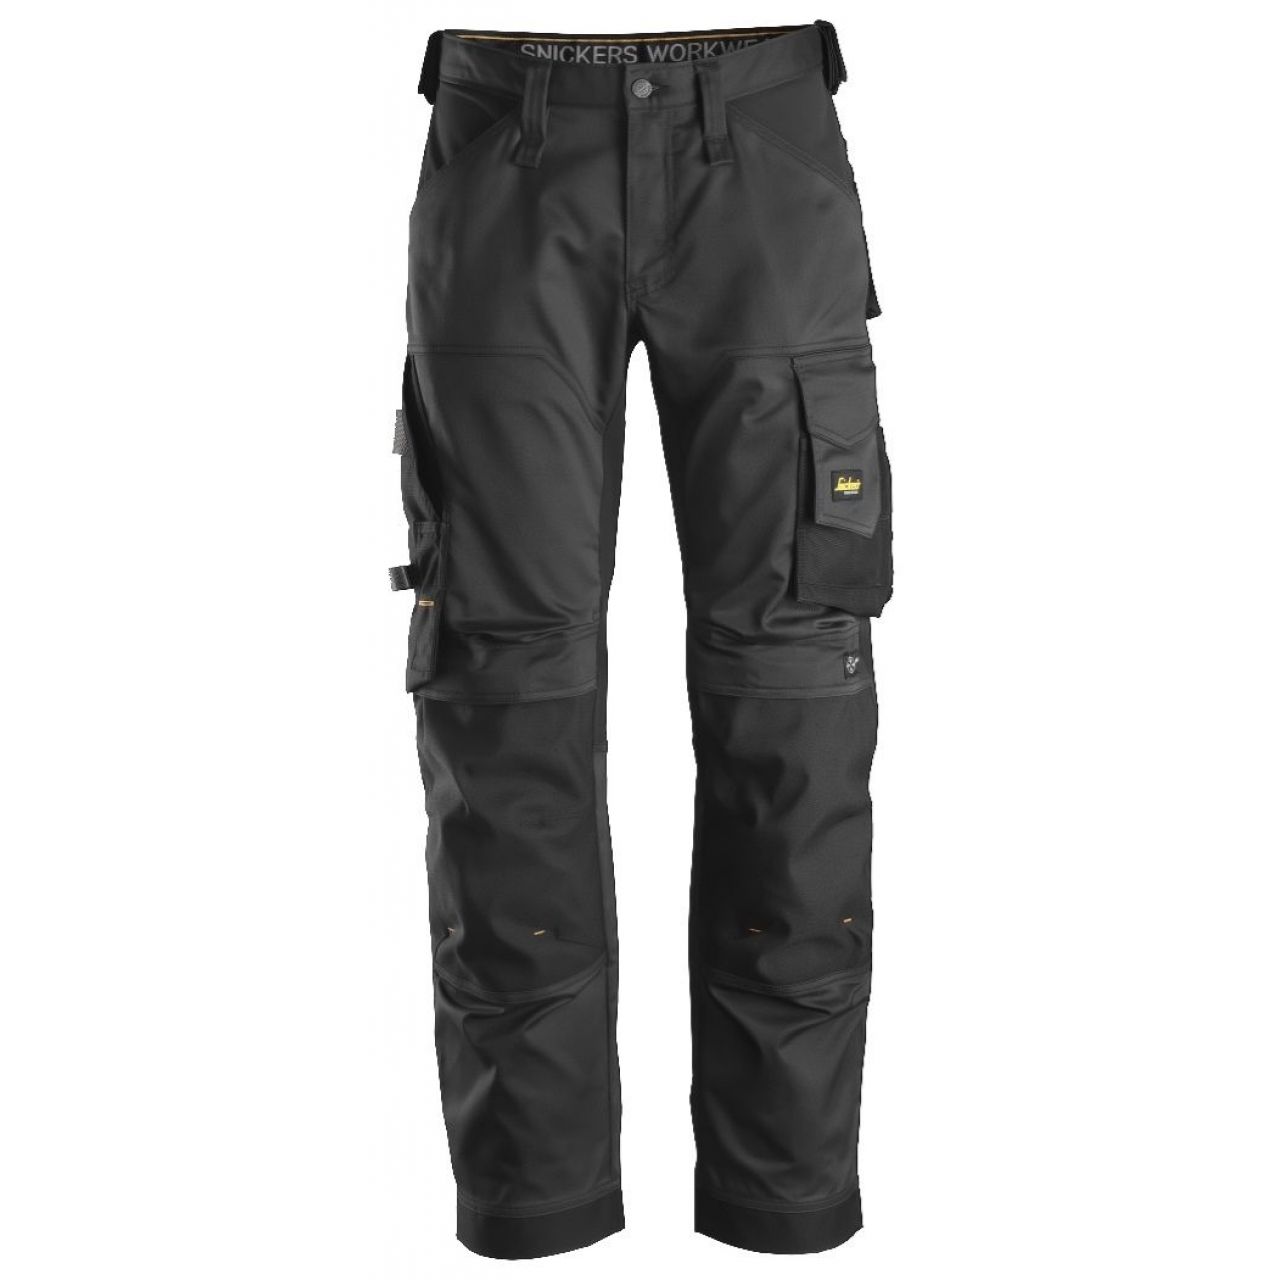 Pantalon elastico ajuste holgado AllroundWork negro talla 200